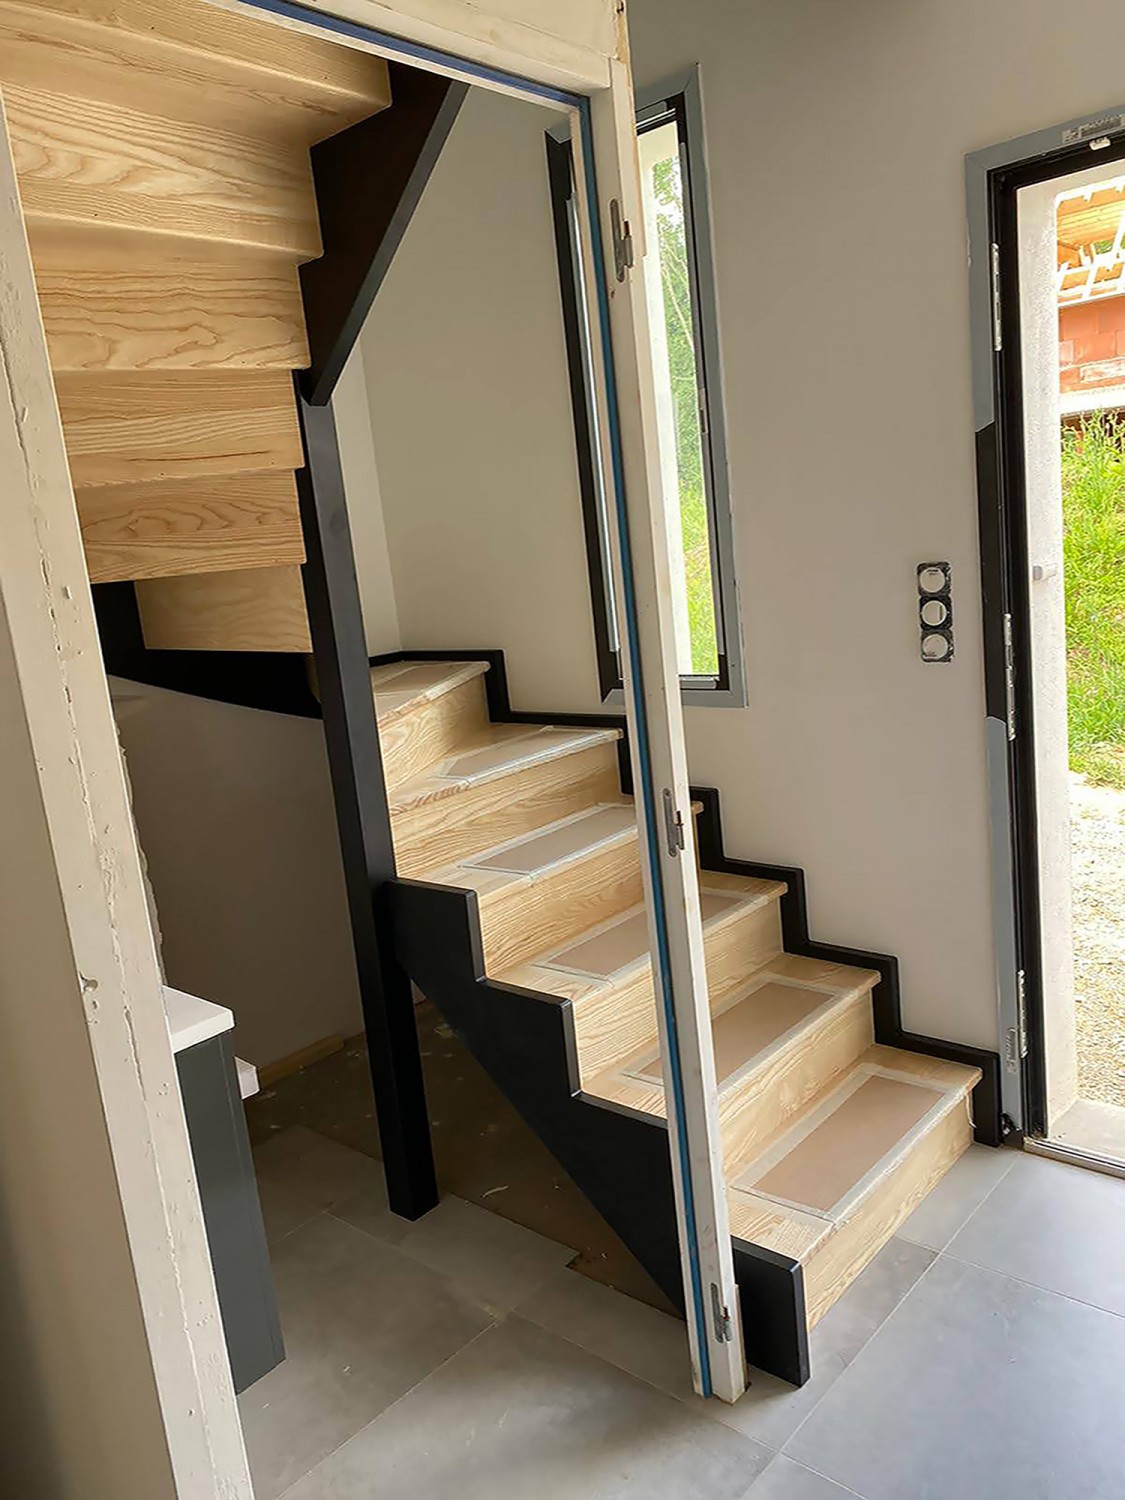 Maison neuve secteur Lorient, création d'un escalier bois sur mesure